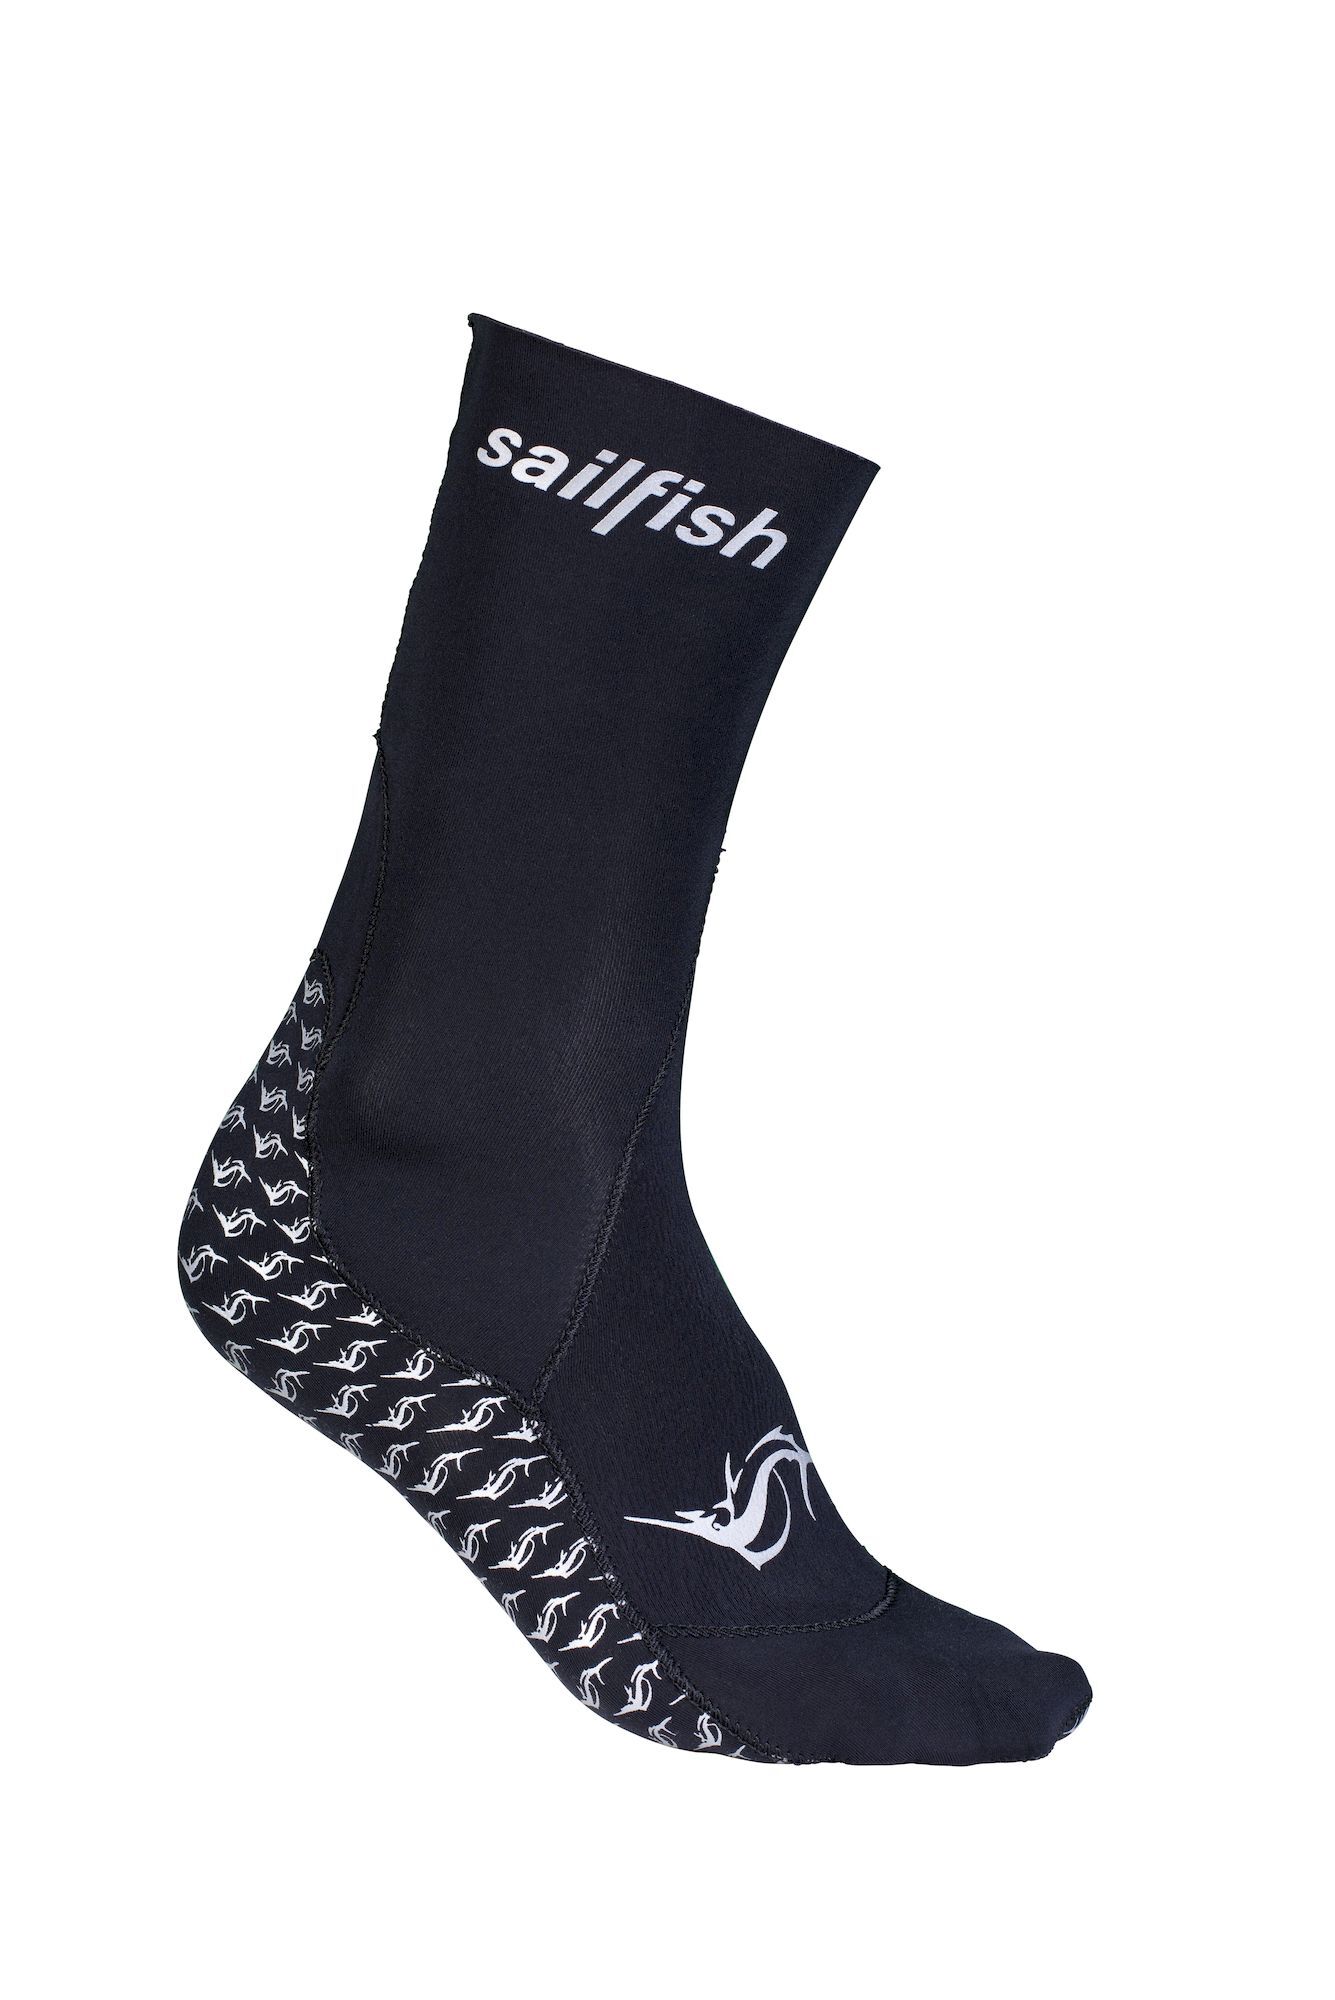 Sailfish Neoprene Socks - Skarpety neoprenowe | Hardloop